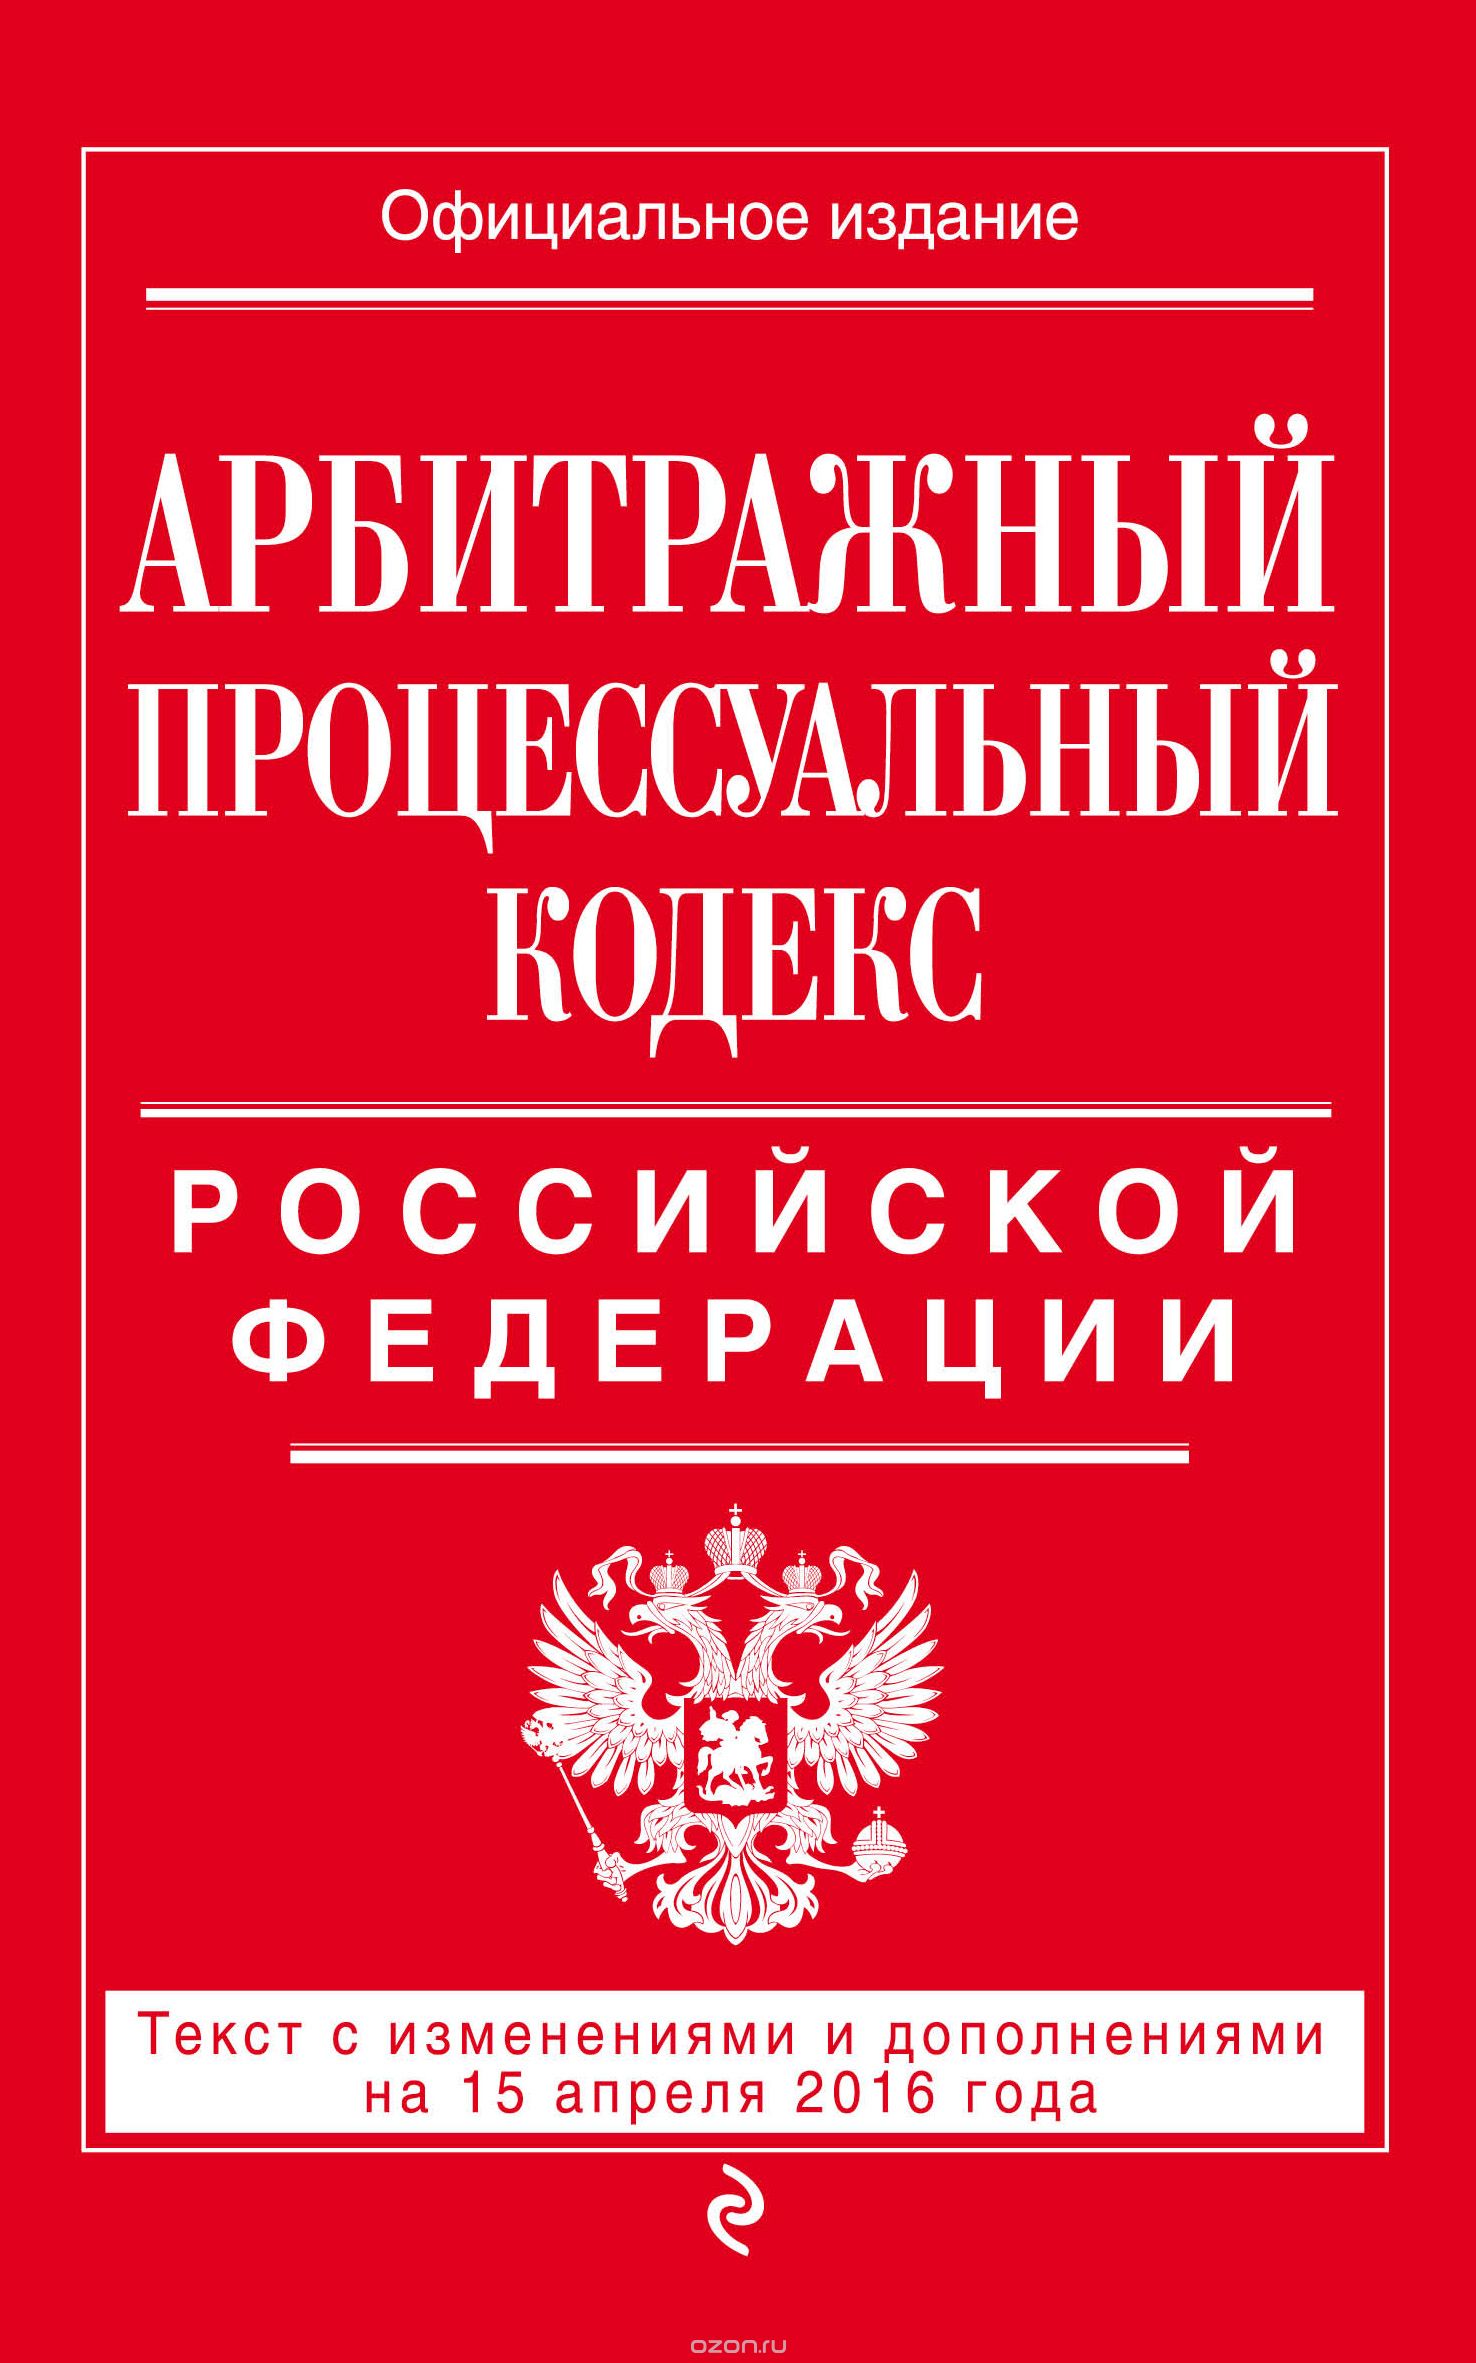 Скачать книгу "Арбитражный процессуальный кодекс Российской Федерации"